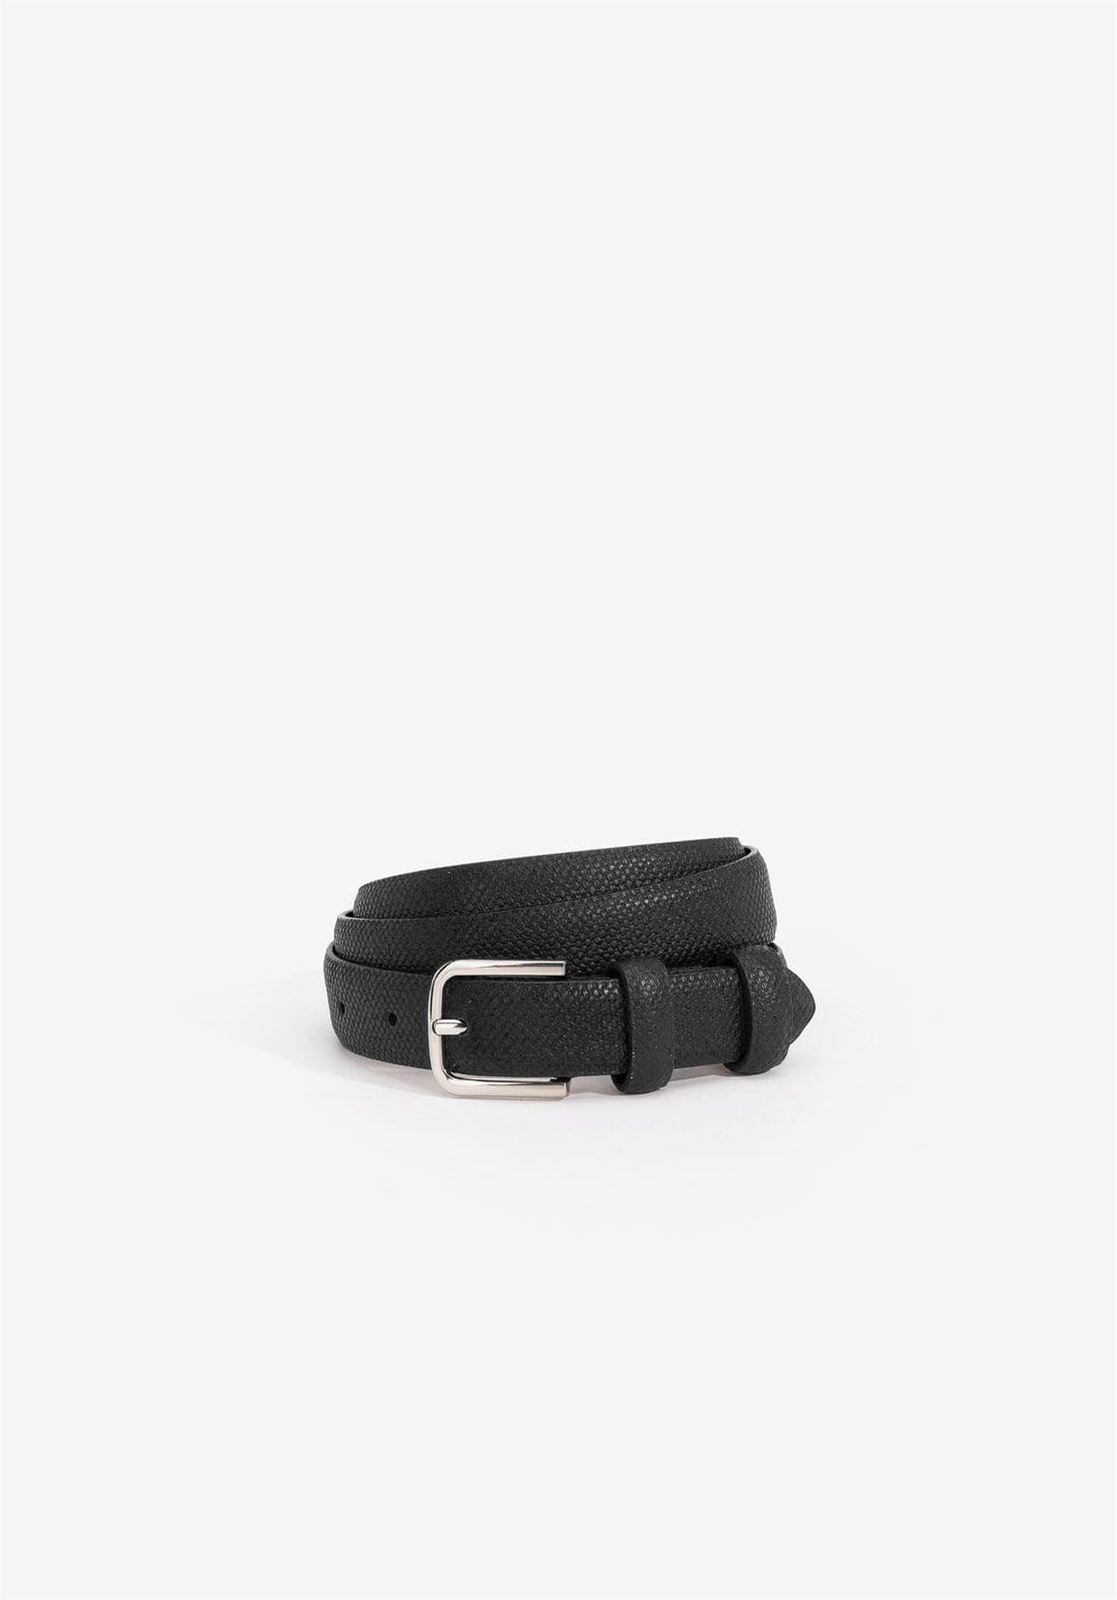 Cinturón negro básico, VILANOVA - Imagen 2